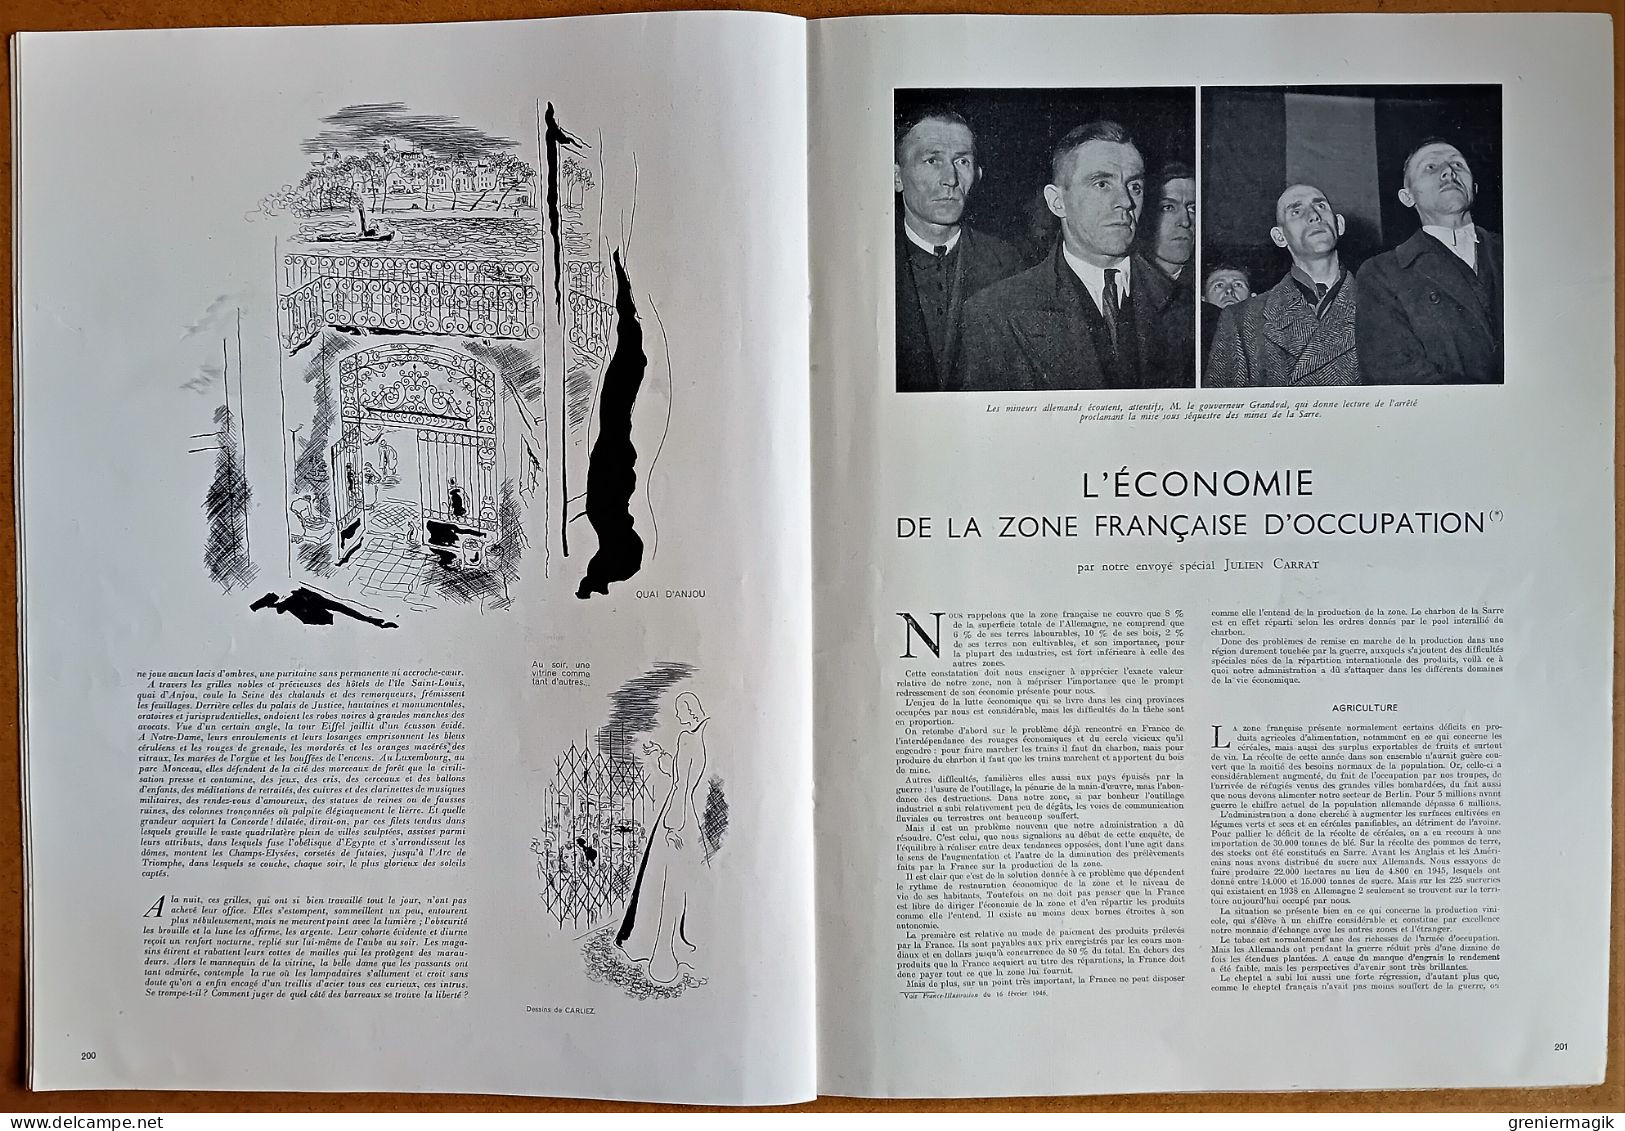 France Illustration N°21 23/02/1946 Bâtiment de ligne "Richelieu"/Belgique/Indes/Caen/Economie Zone française occupation